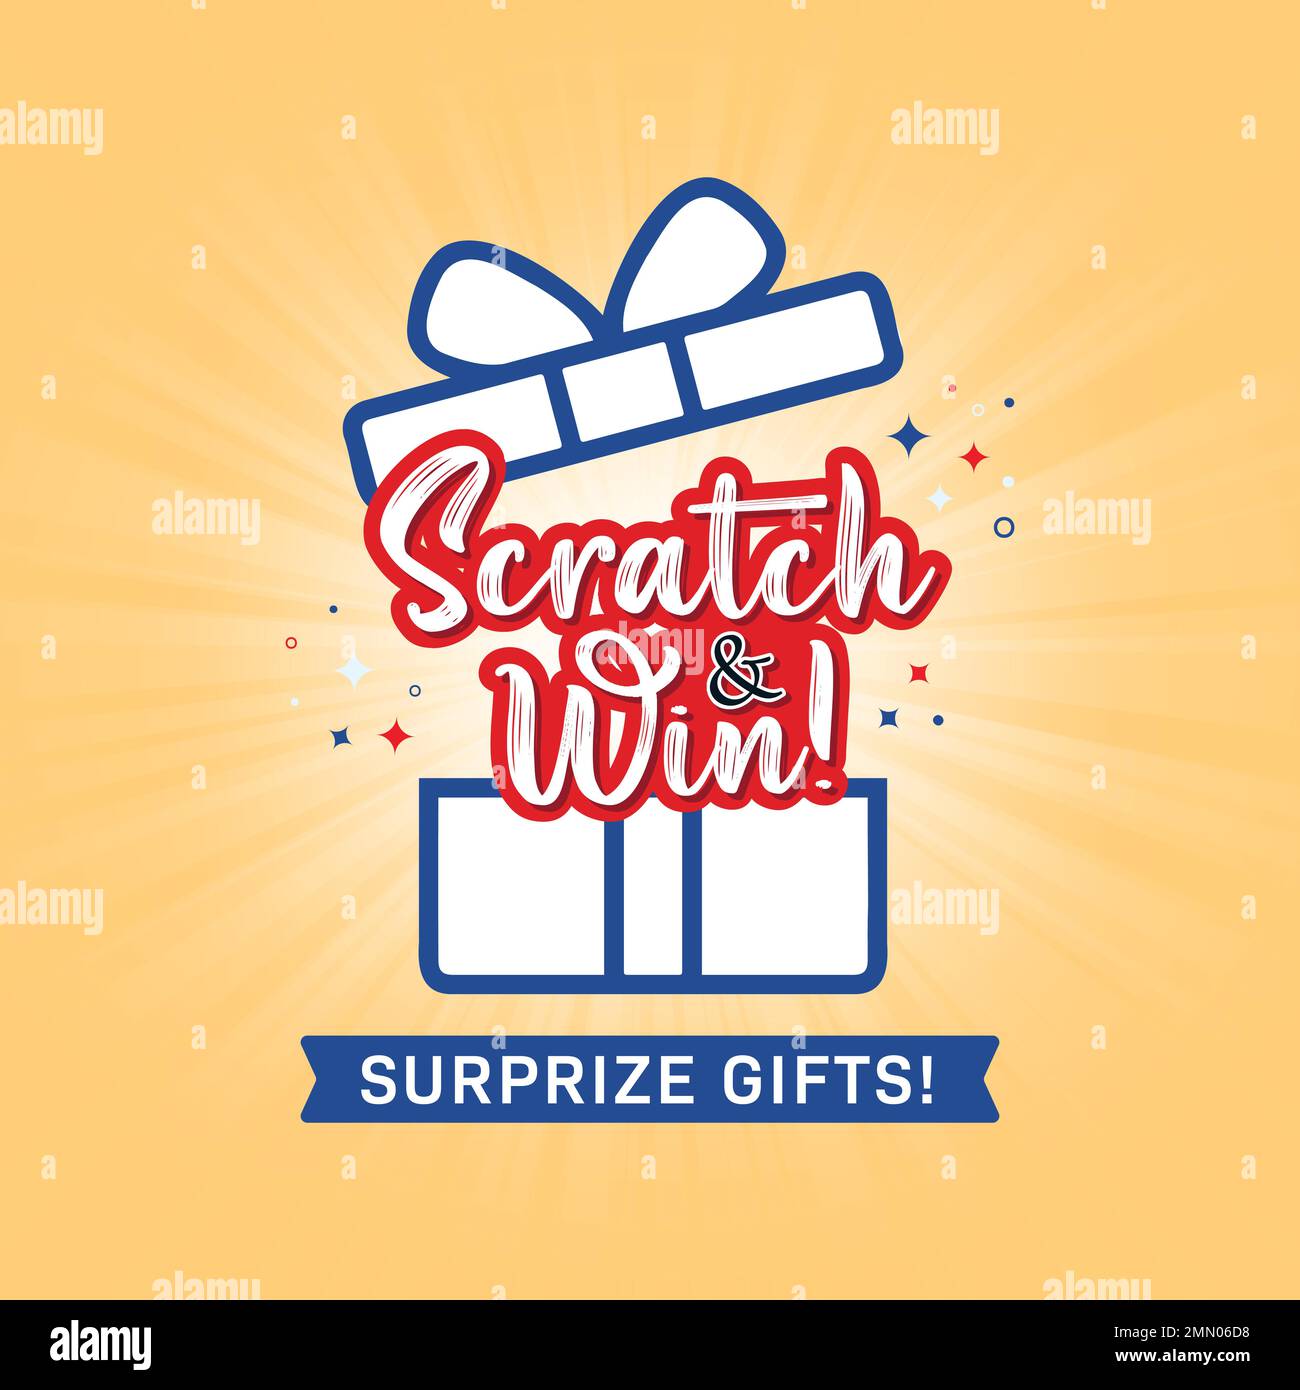 Apri la confezione regalo con confetti, glitter e testo Scratch & Win. Presenta un elemento di design per la decorazione della scatola. Illustrazione vettoriale. Illustrazione Vettoriale